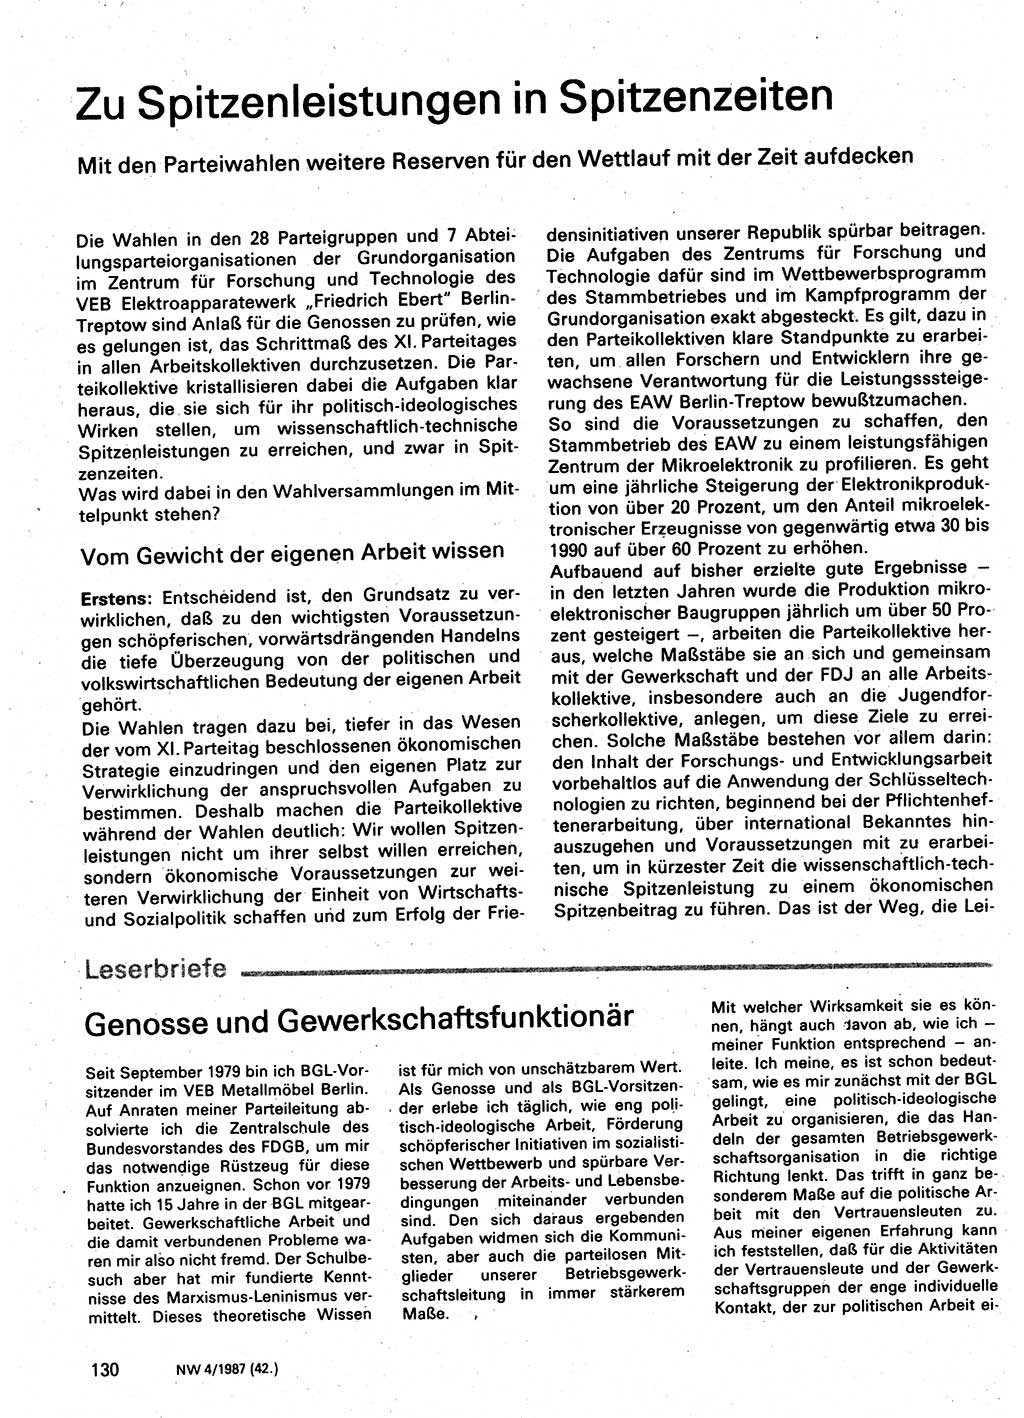 Neuer Weg (NW), Organ des Zentralkomitees (ZK) der SED (Sozialistische Einheitspartei Deutschlands) für Fragen des Parteilebens, 42. Jahrgang [Deutsche Demokratische Republik (DDR)] 1987, Seite 130 (NW ZK SED DDR 1987, S. 130)